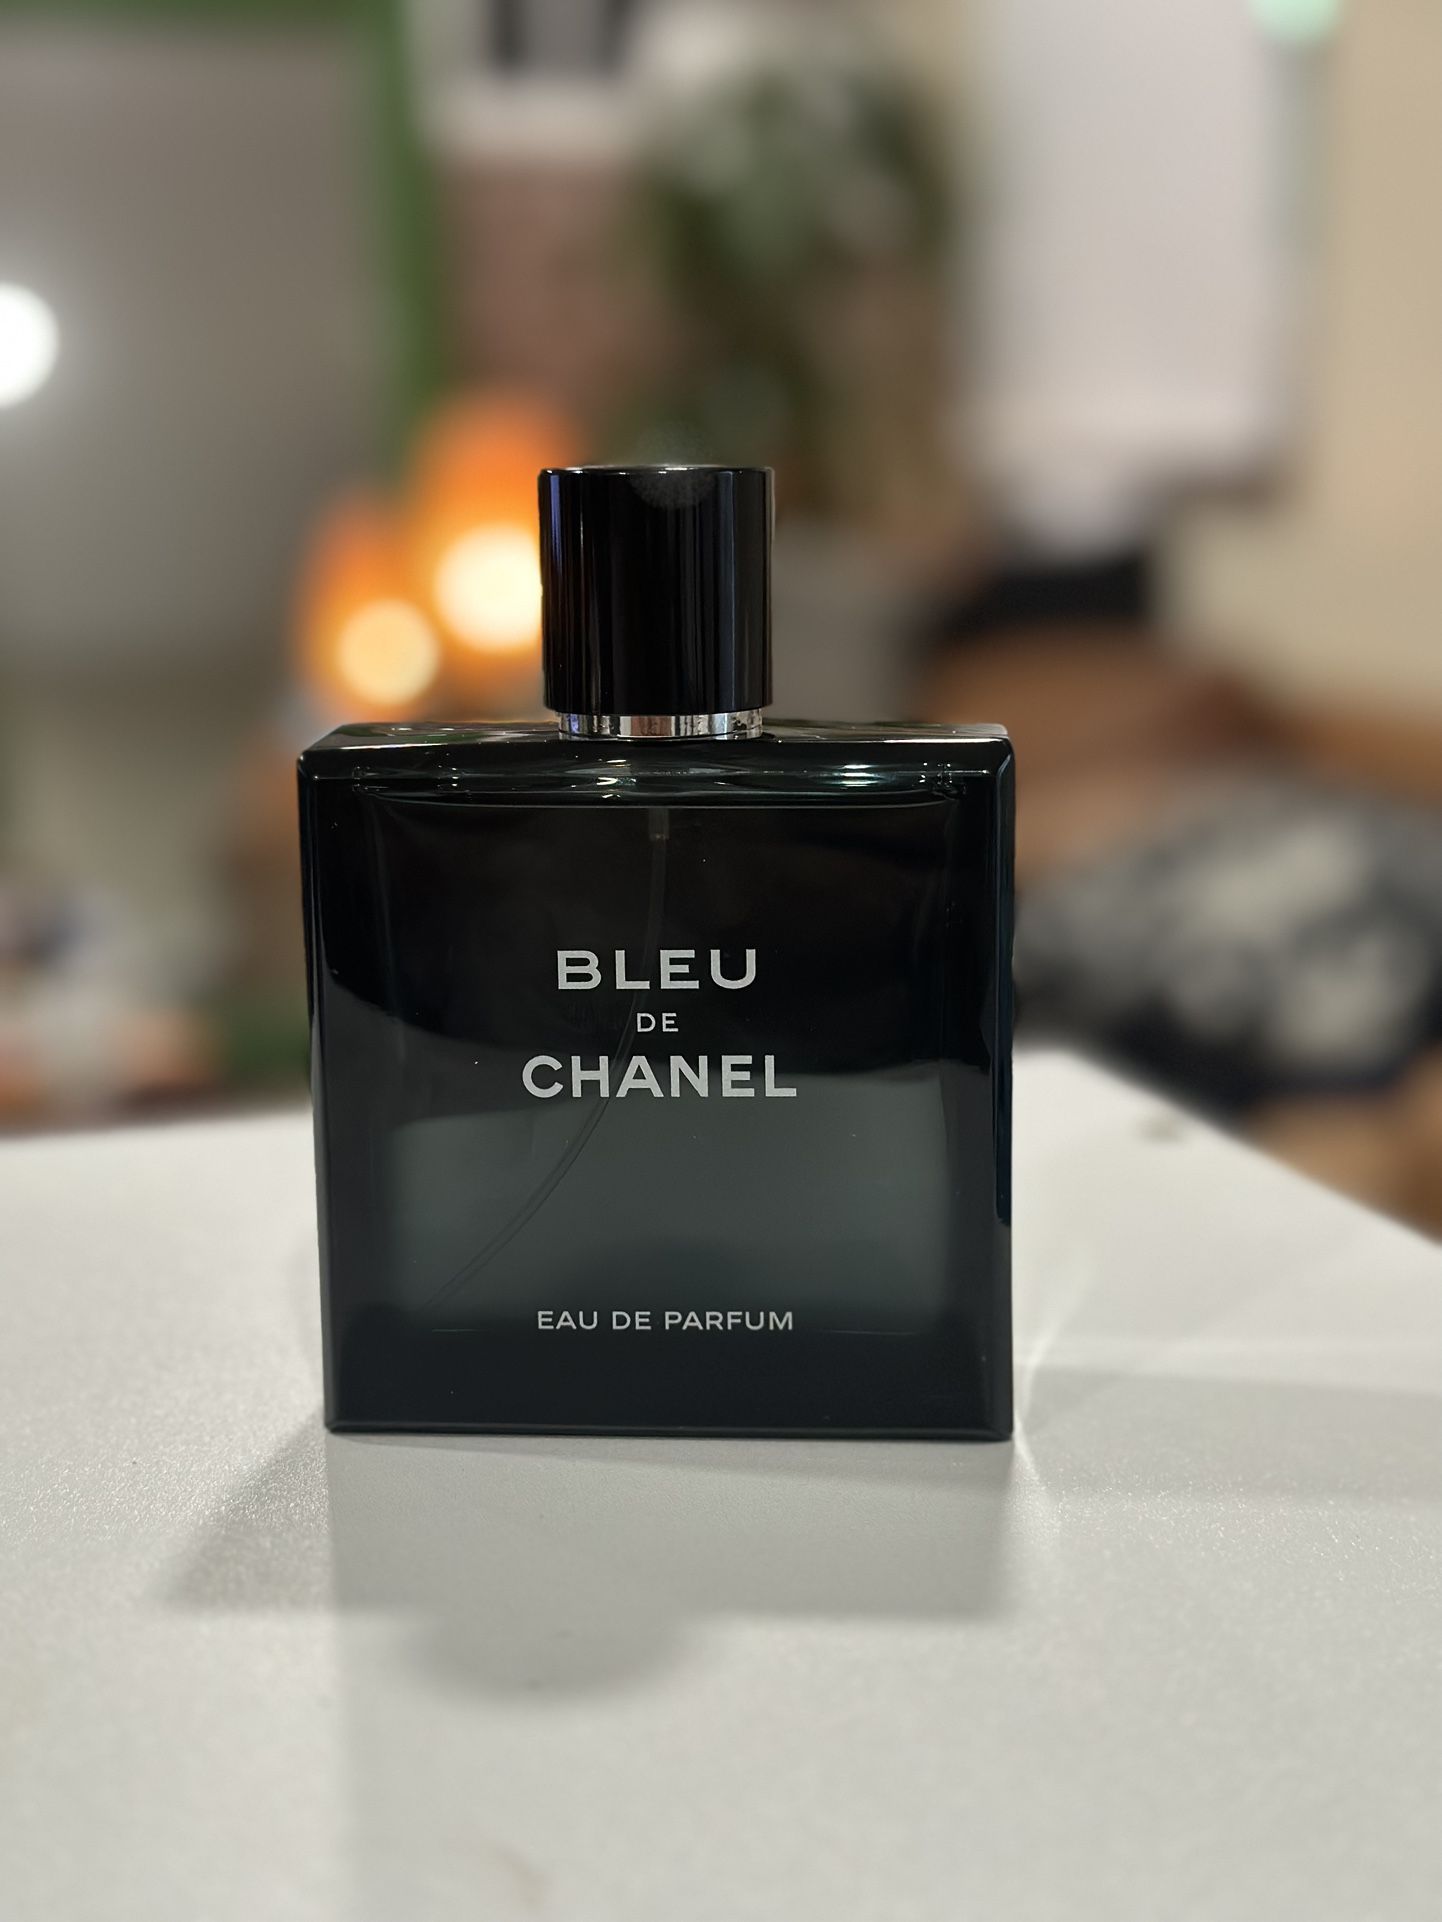 Bleu De Chanel Eau De Parfum 3.4 FL OZ for Sale in Lincoln Acres, CA -  OfferUp